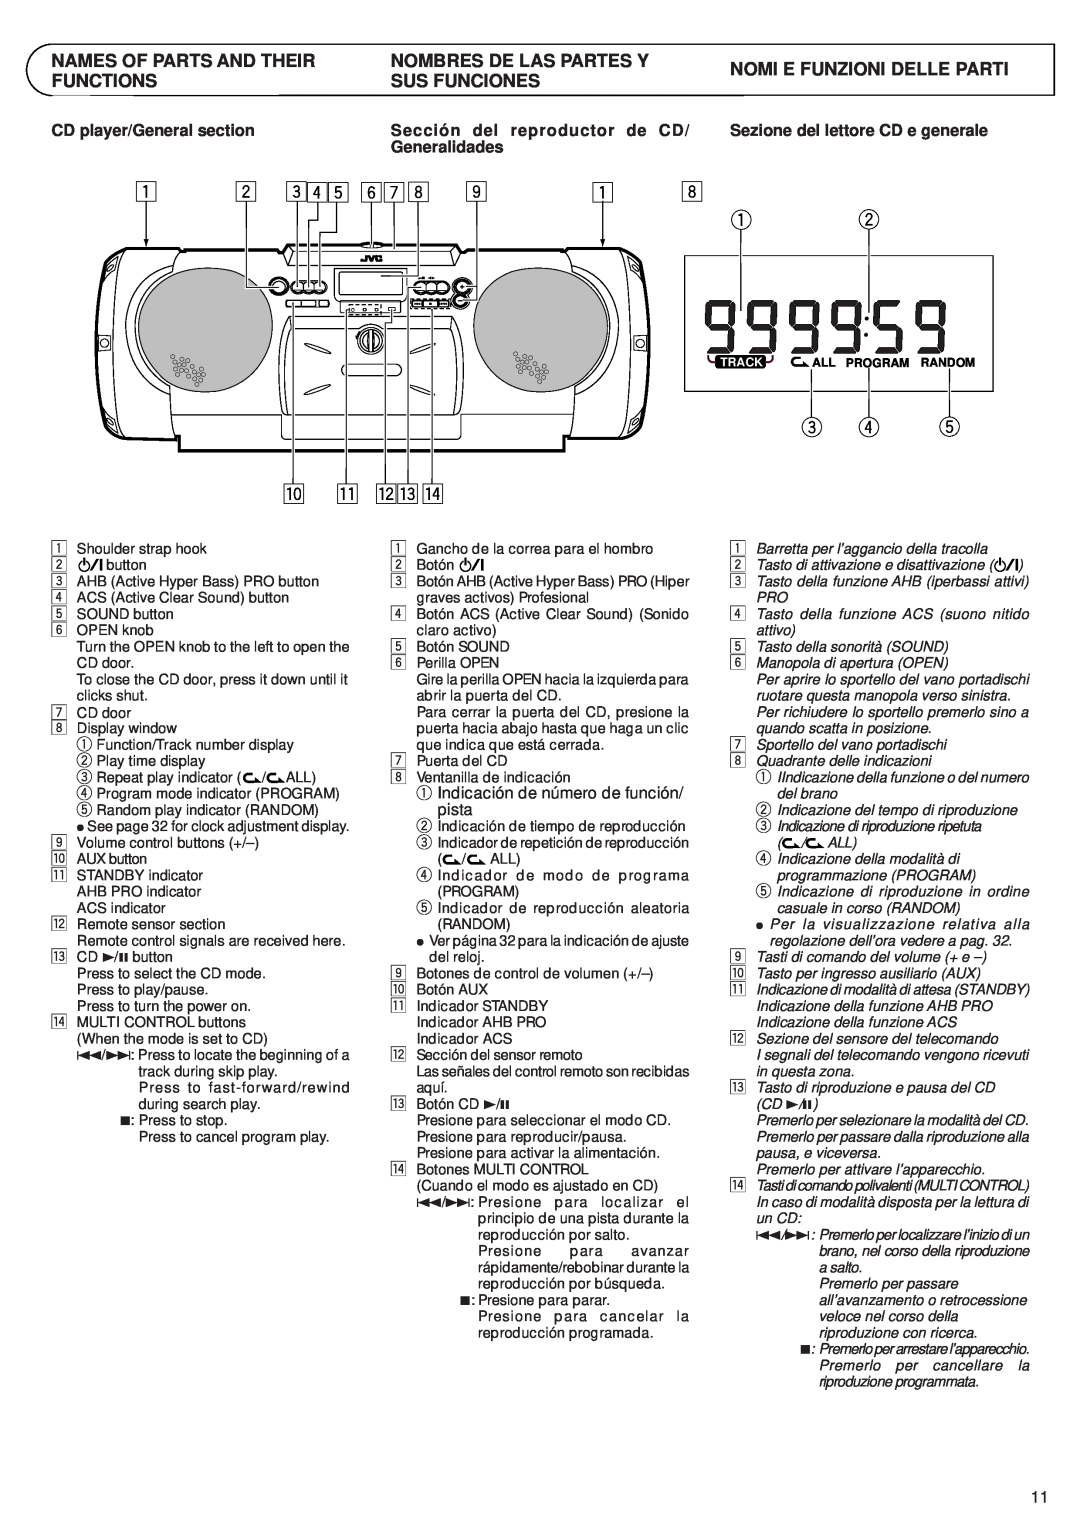 JVC RV-B55 GY/BU/LTD manual 3 4 pq we r, Names Of Parts And Their Functions, Nombres De Las Partes Y Sus Funciones 